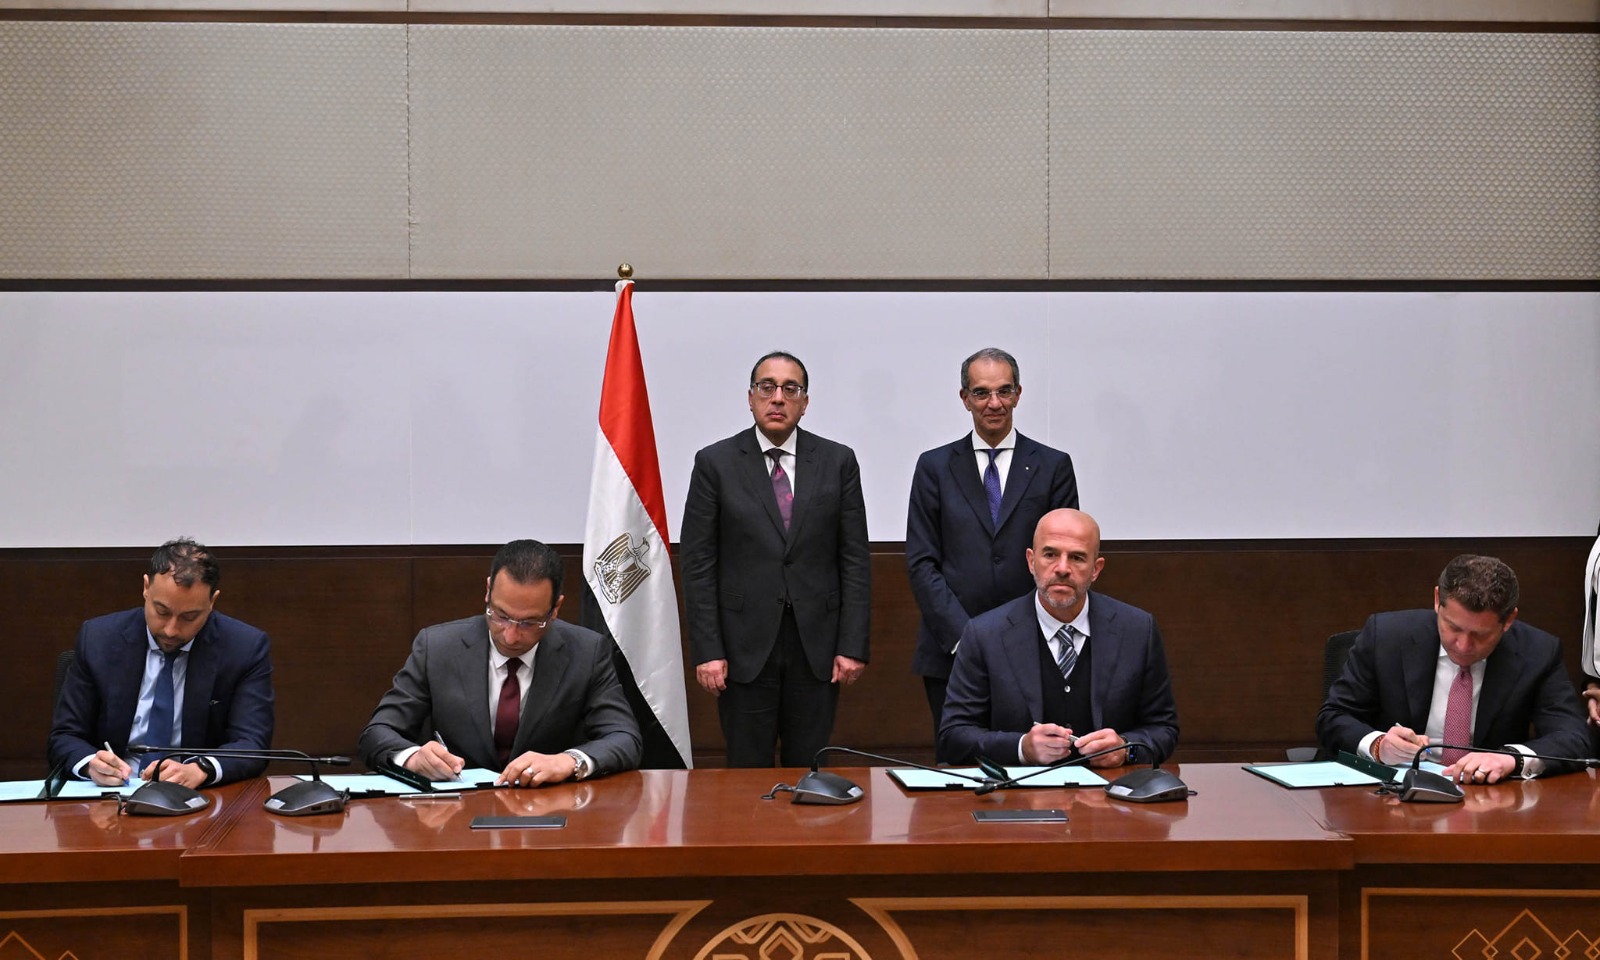 توقيع مذكرة تفاهم بشأن مركز للبيانات الخضراء في مصر بحوالي 200 ميجاوات طاقة كهربائية